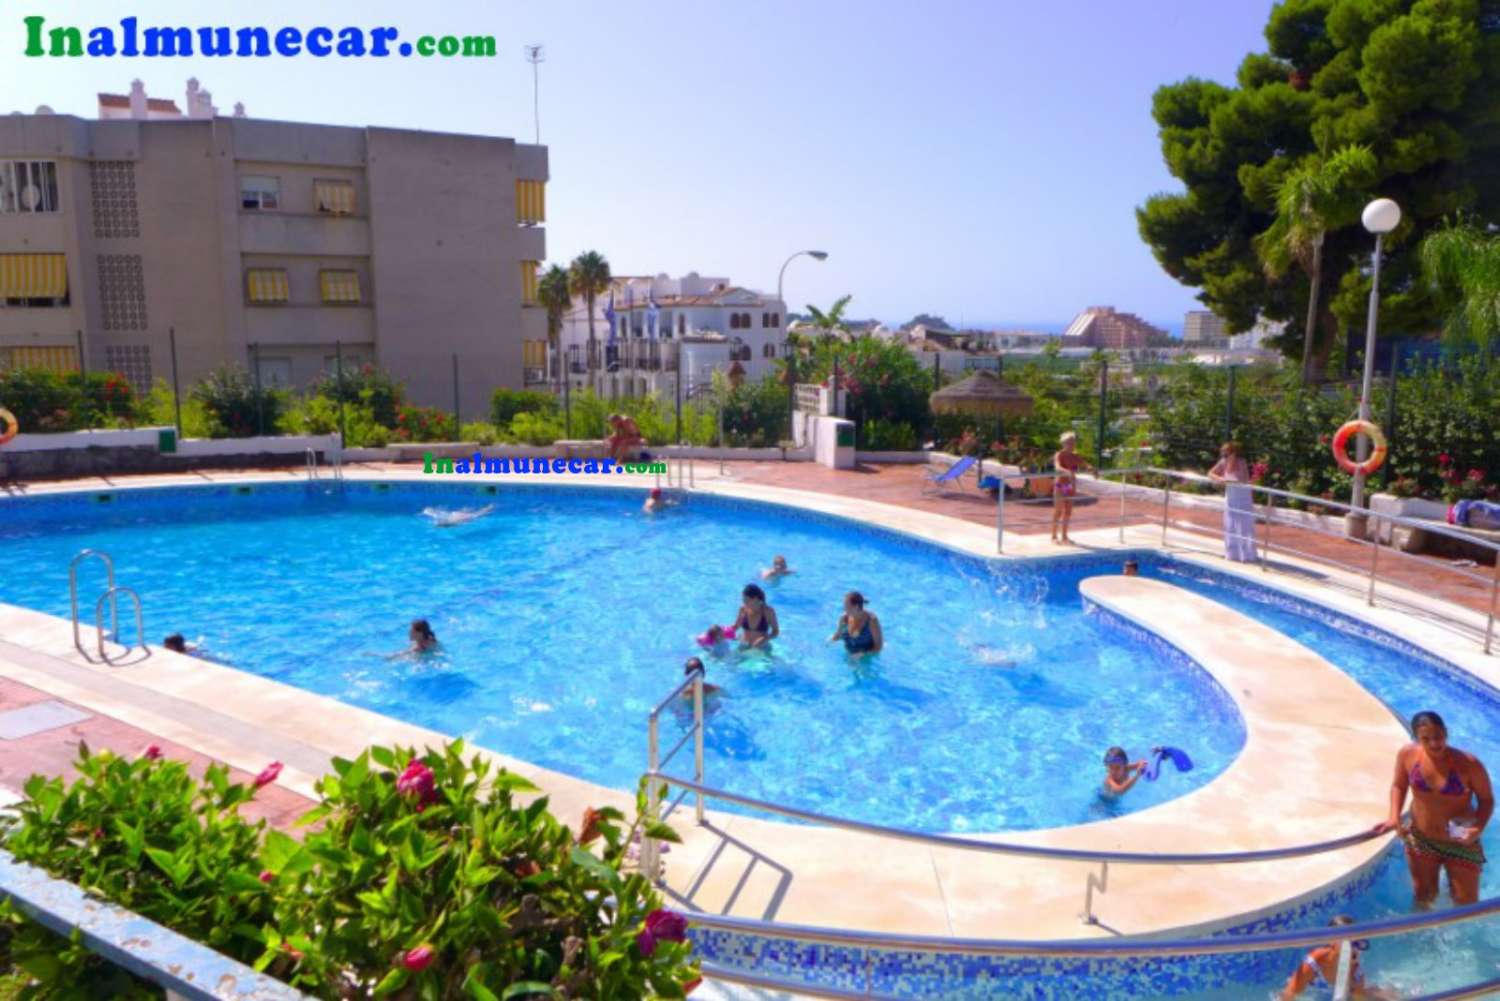 Lägenhet till salu i Almuñecar med pool och gemensam parkering